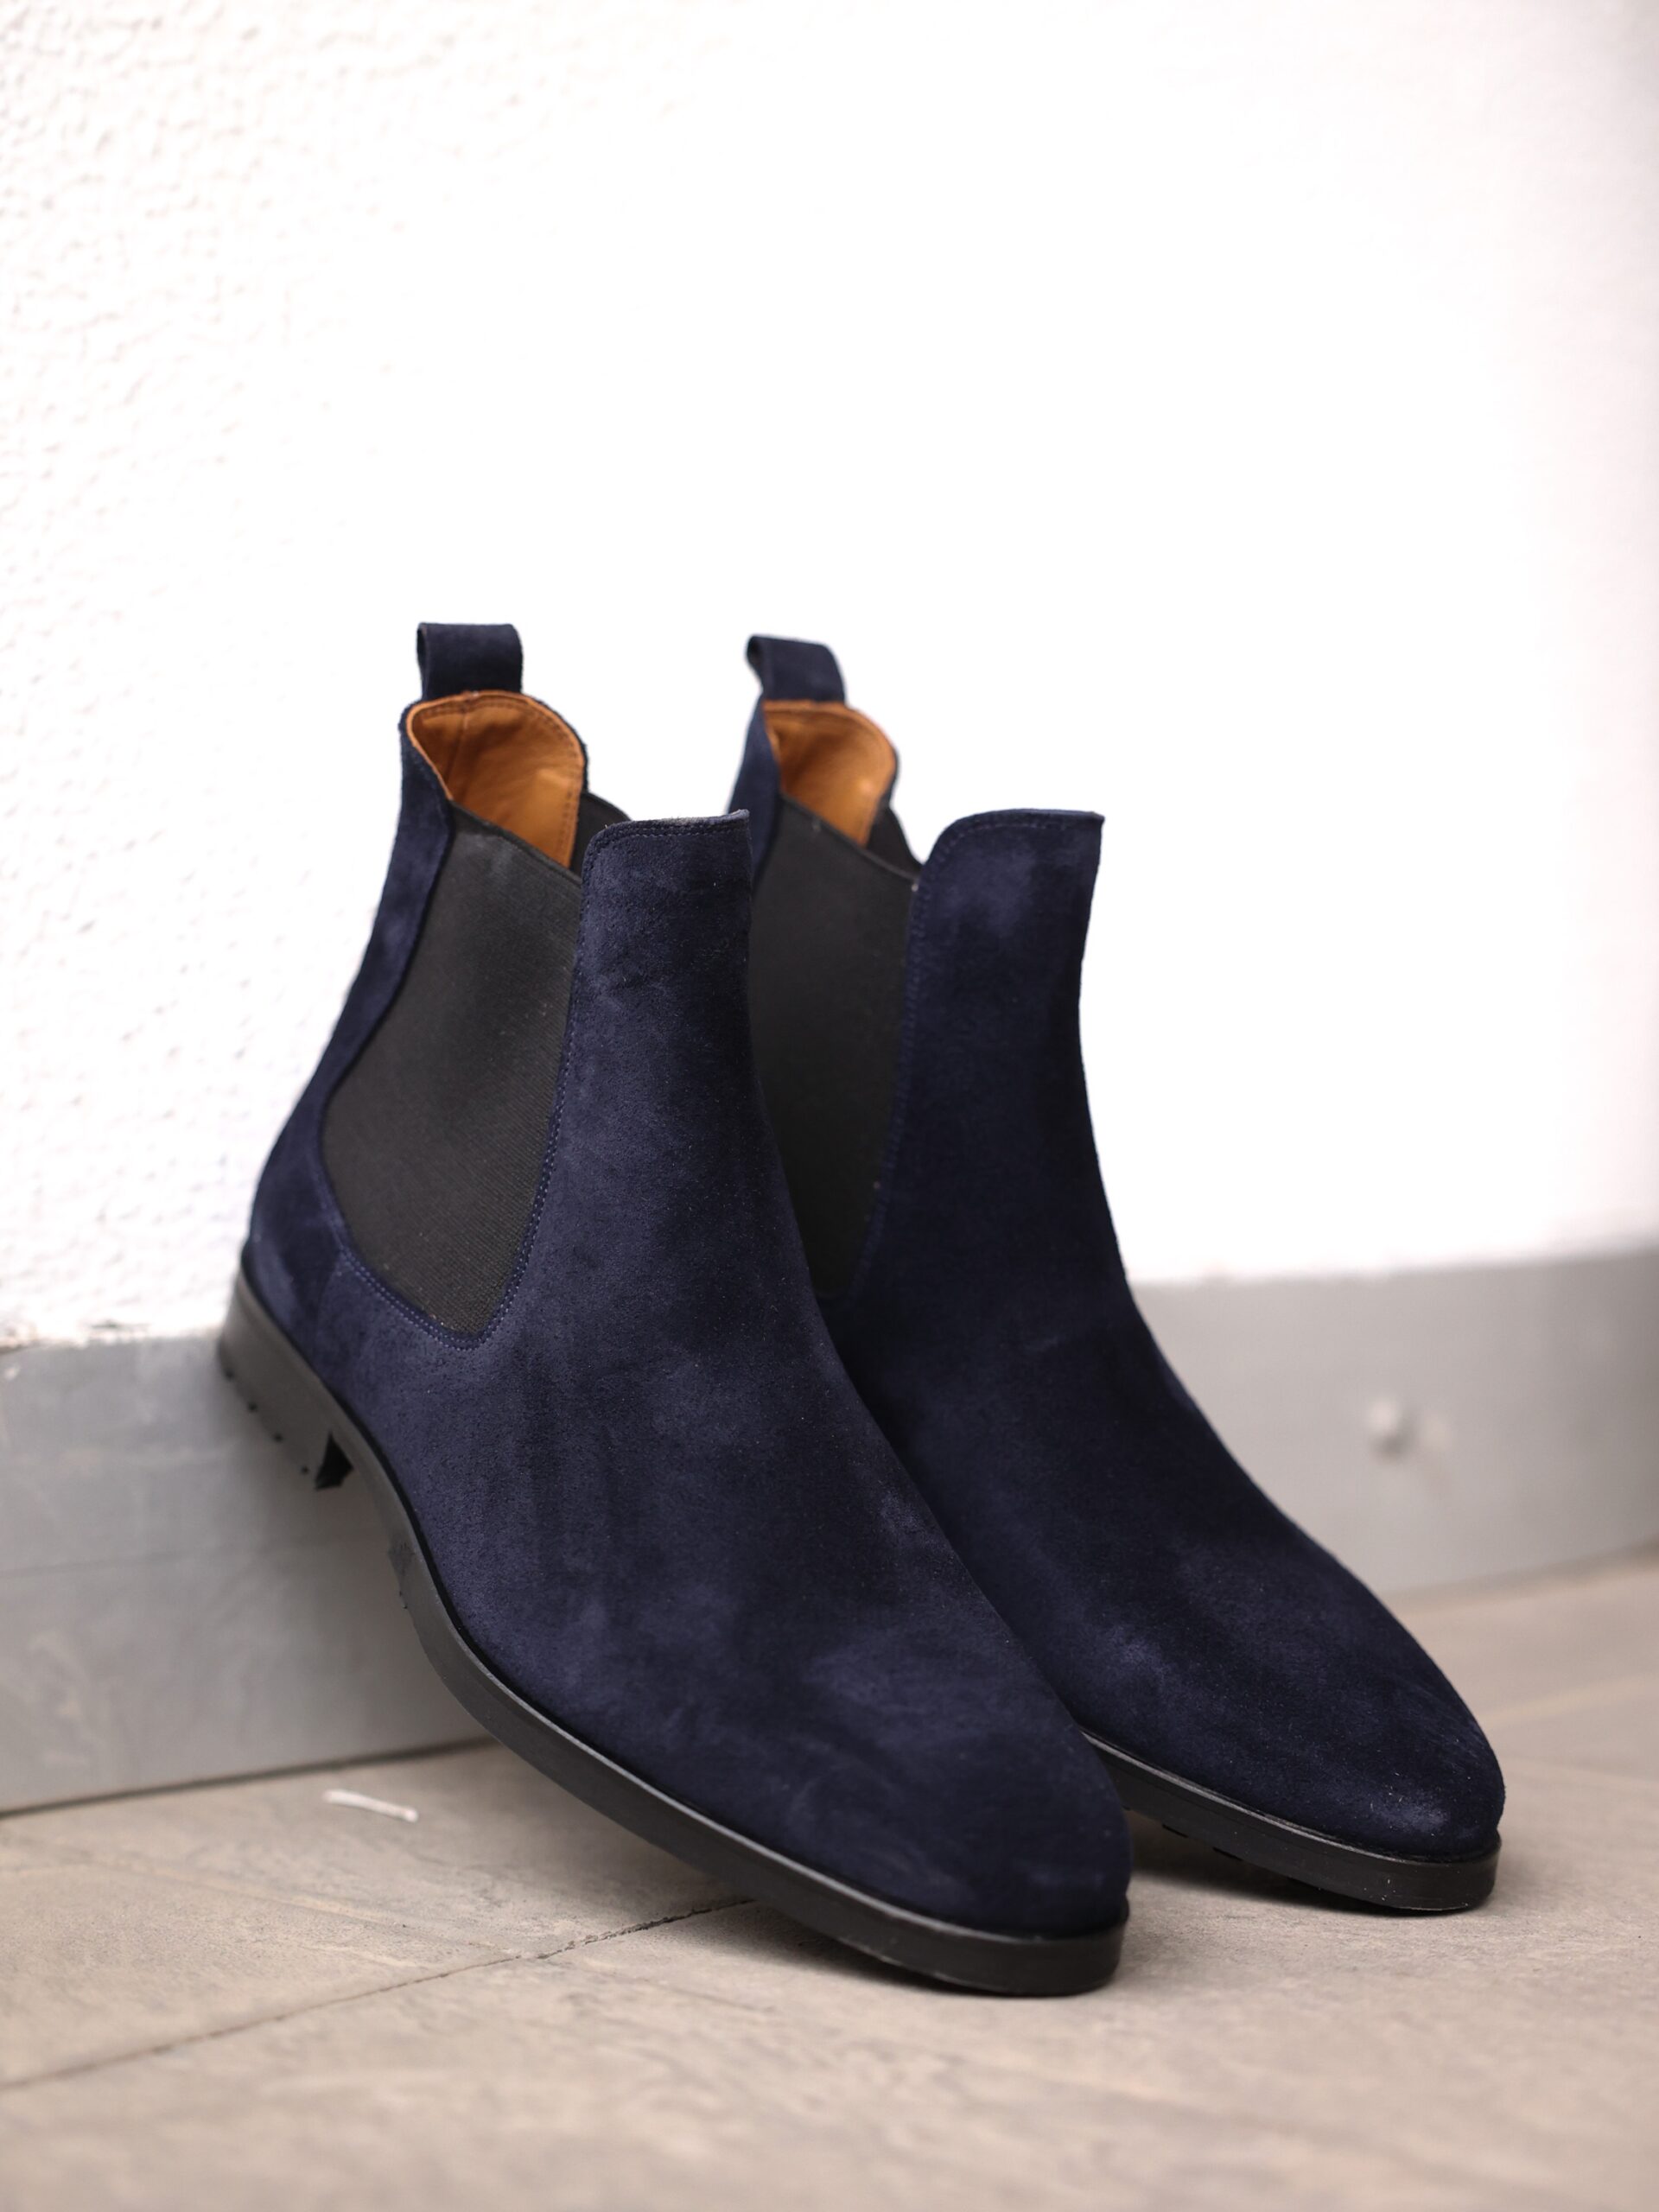 udløb Grand pålægge Madrid Men's Dark Navy Blue Suede Leather Men's Chelsea Boots | MrGuild